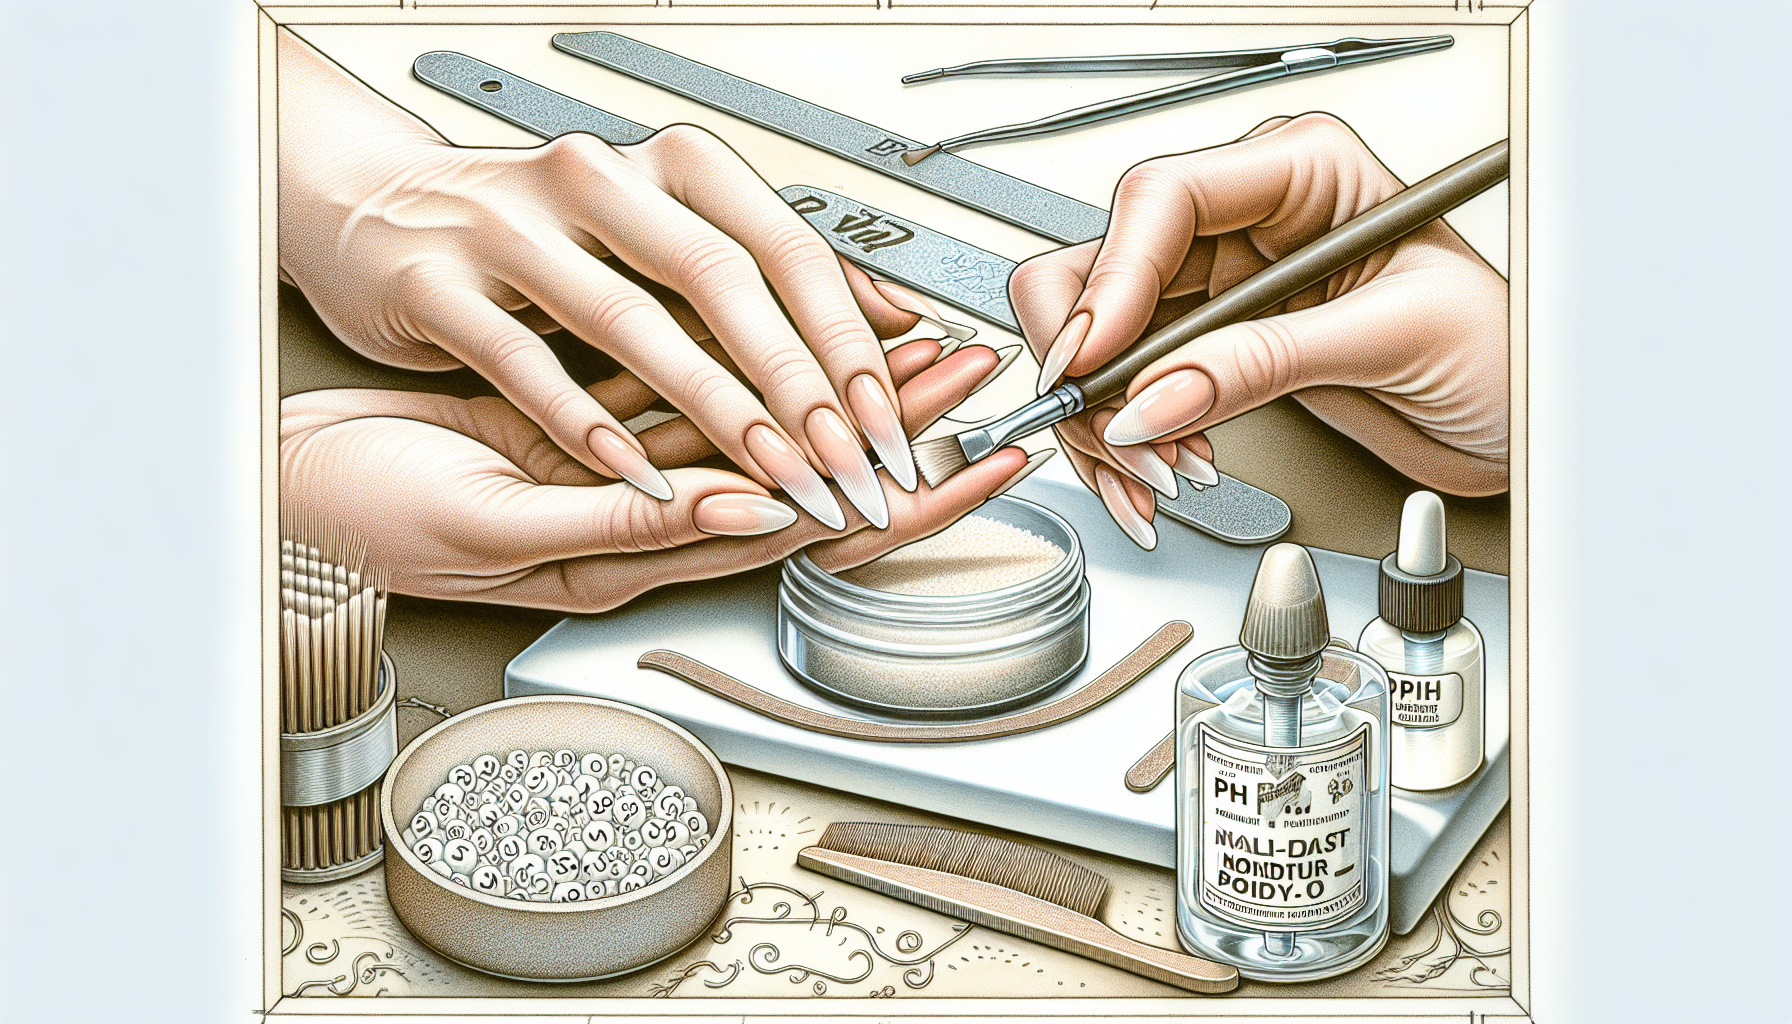 Prepping natural nails for nail extensions